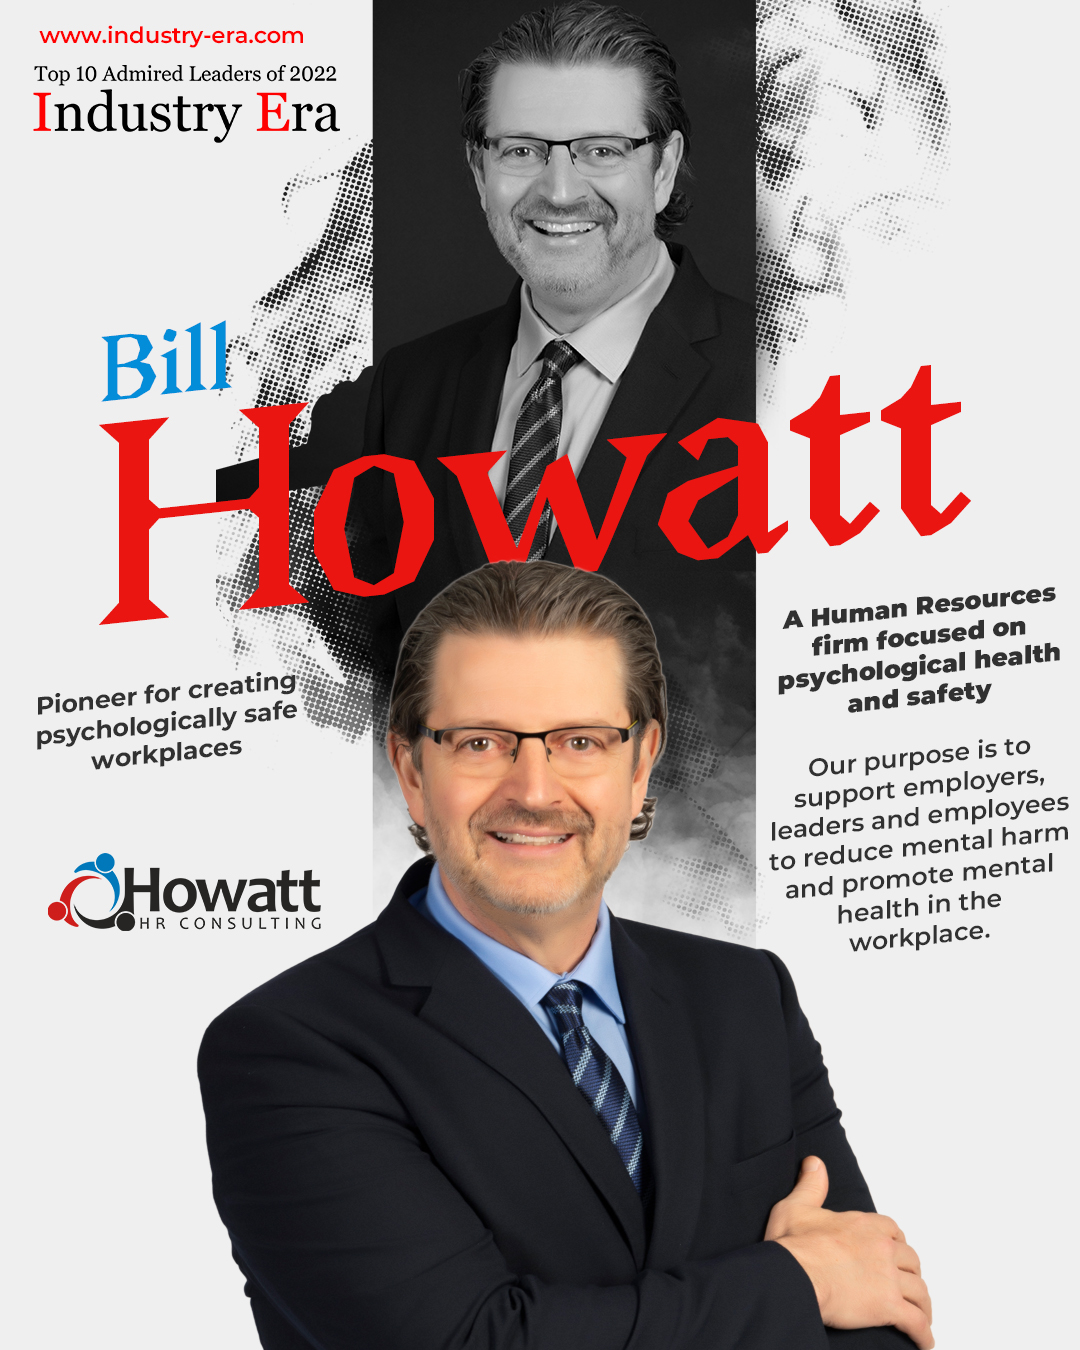 Bill Howatt, Founder & CEO of Howatt HR Consulting, Top 10 Admired